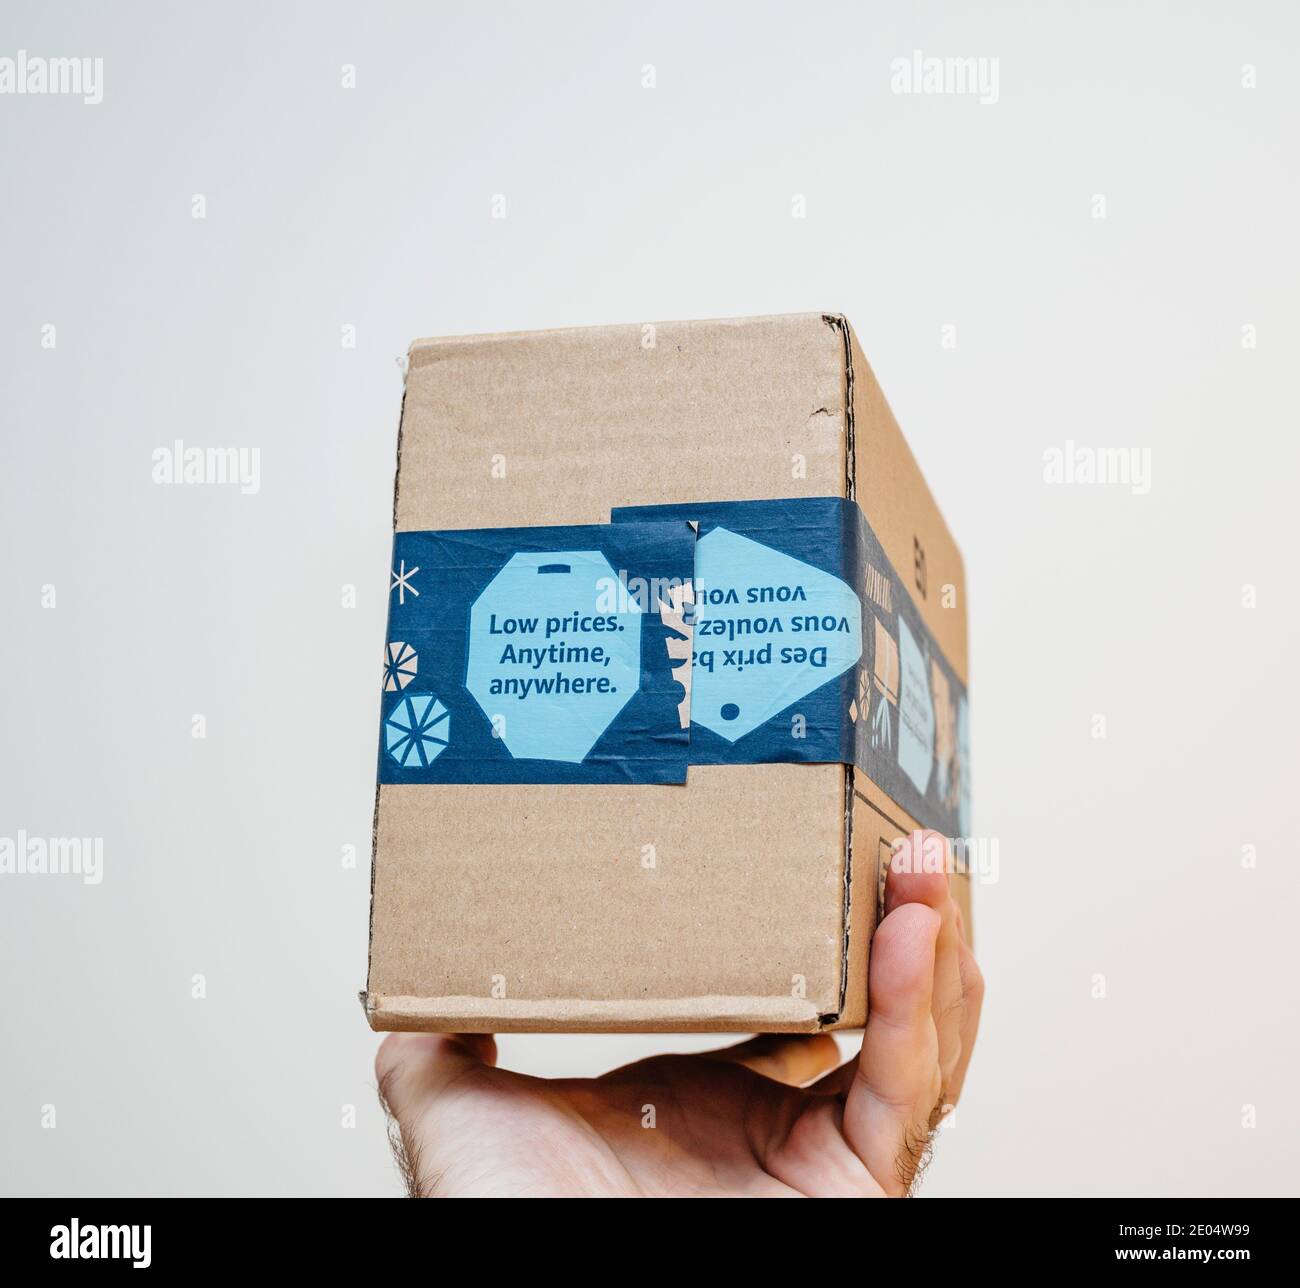 Paris, France - 12 décembre 2020: POV homme main tenant paquet de colis d' Amazon Prime avec bas prix n'importe quand, partout publicité sur le paquet  - isolé sur blanc Photo Stock - Alamy